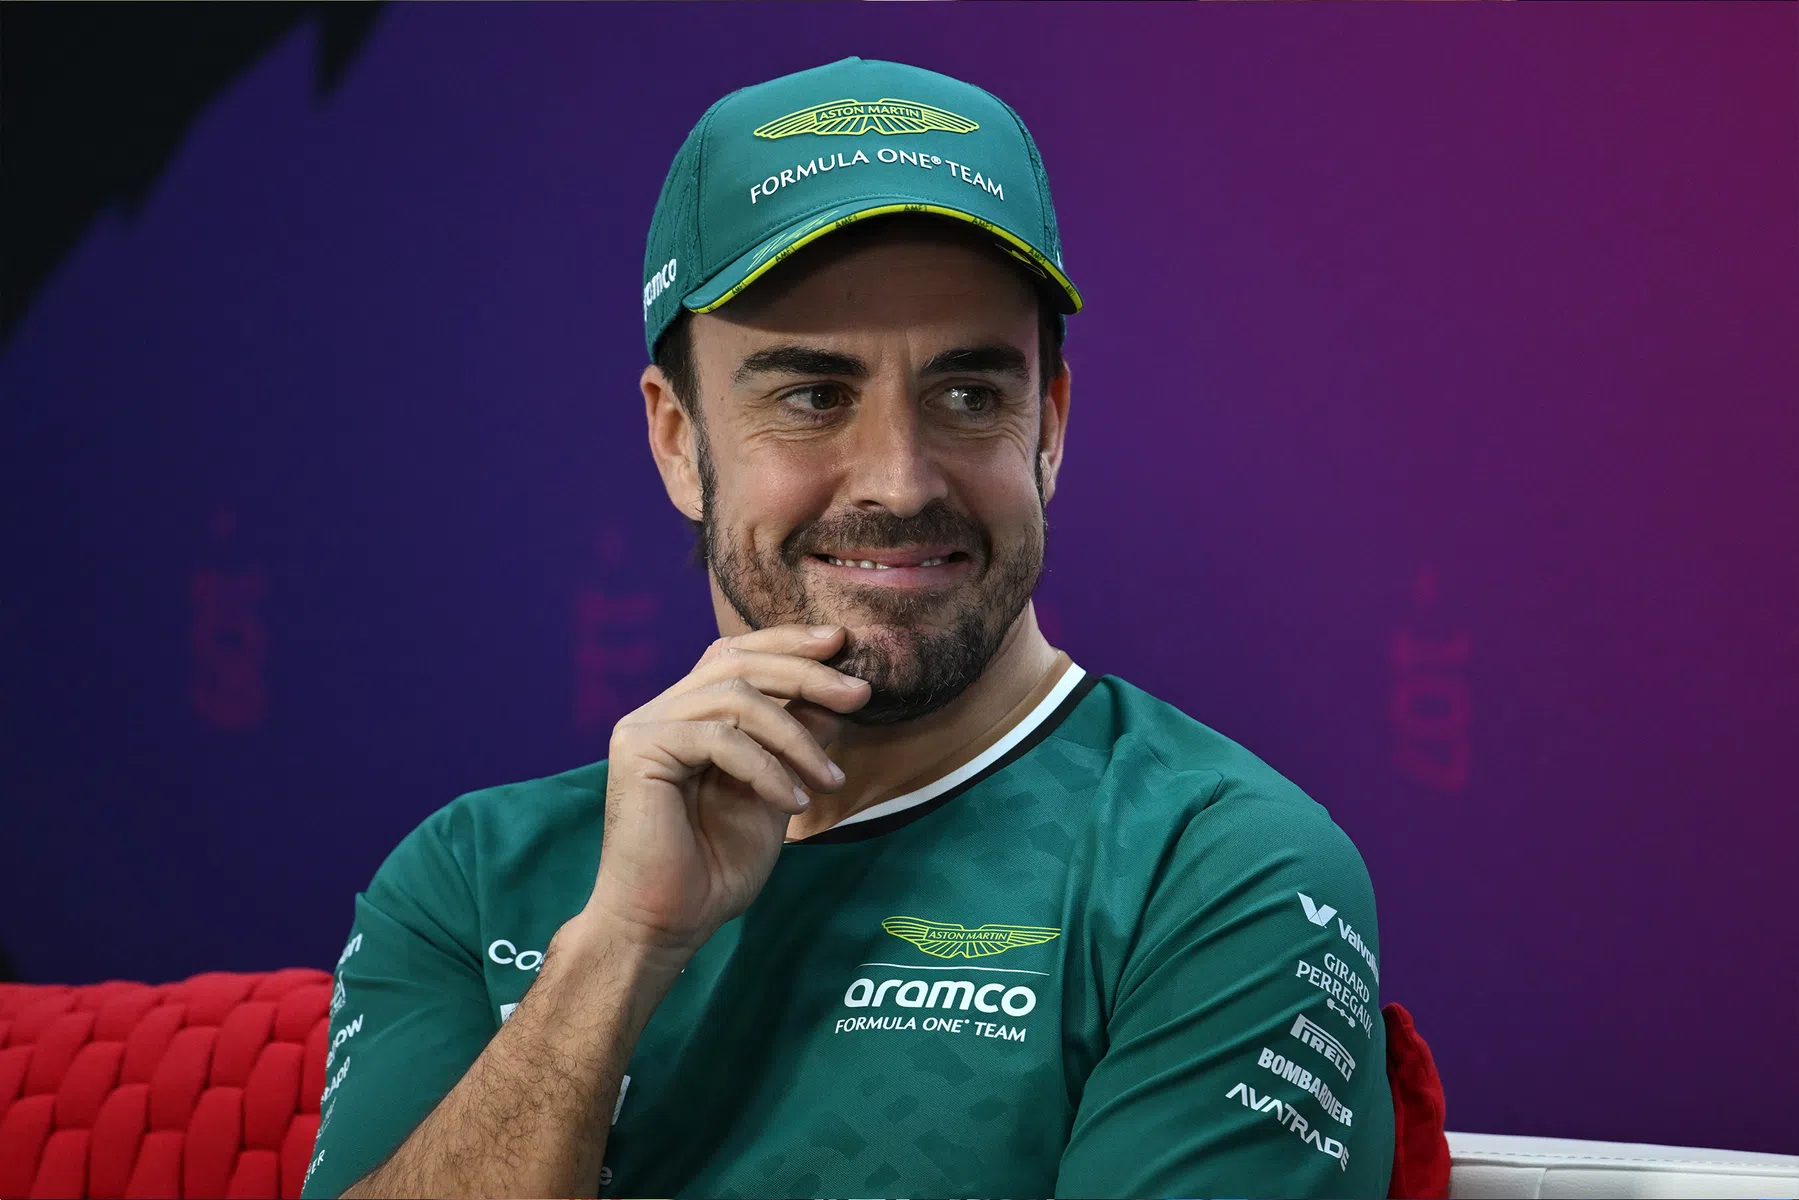 Alonso over mogelijke titel Aston Martin: 'Gaat even duren, maar het kan'